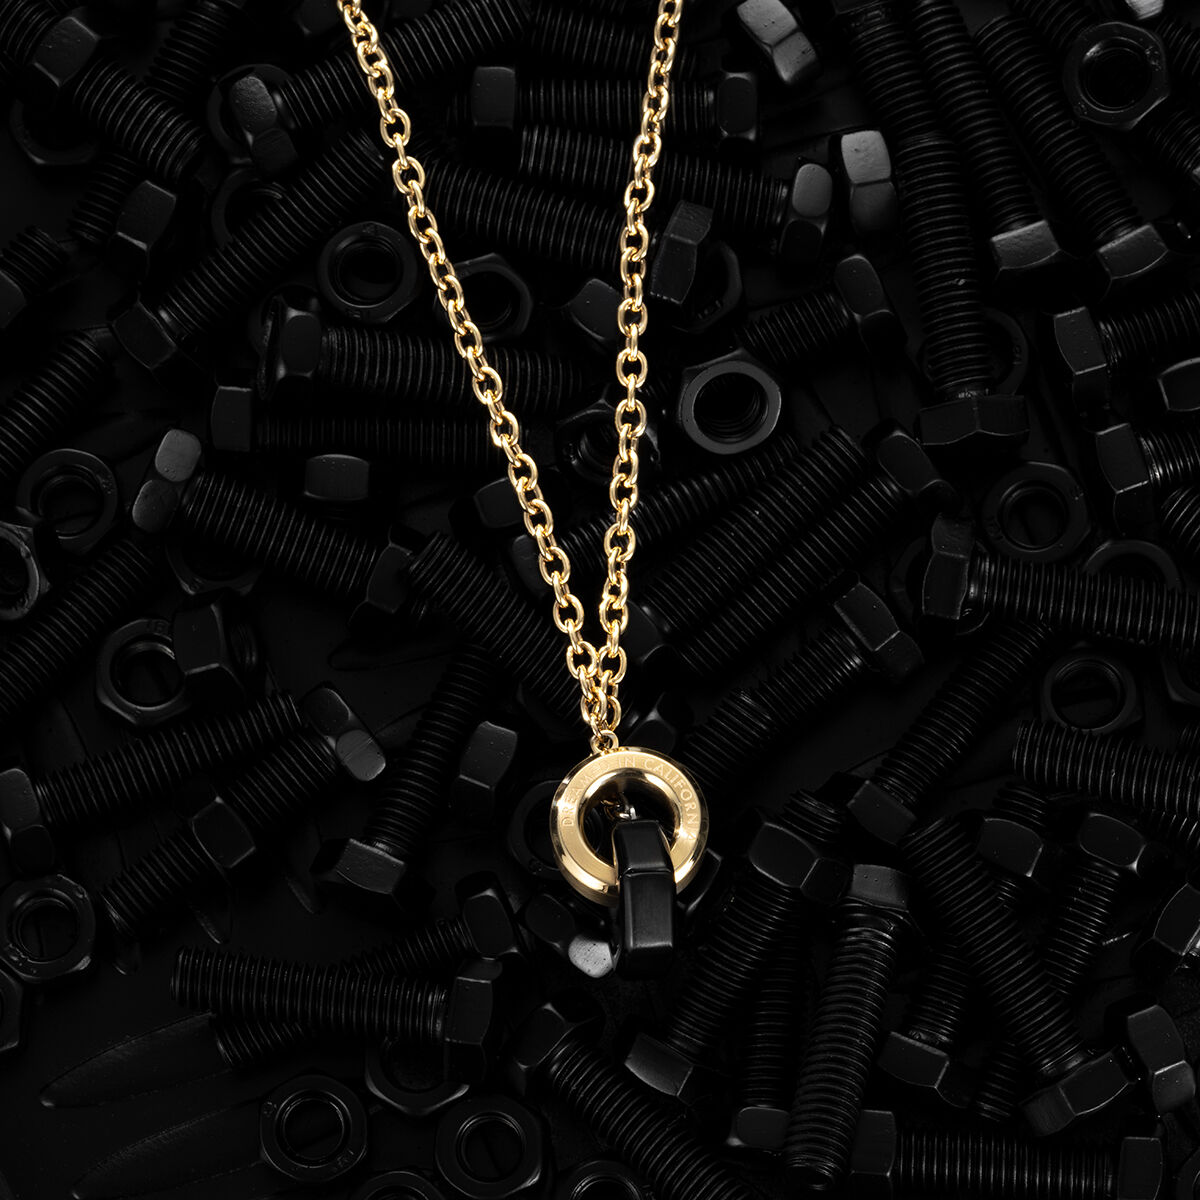 Horseshoe U Link Chain Hardware Double layered necklace | eBay